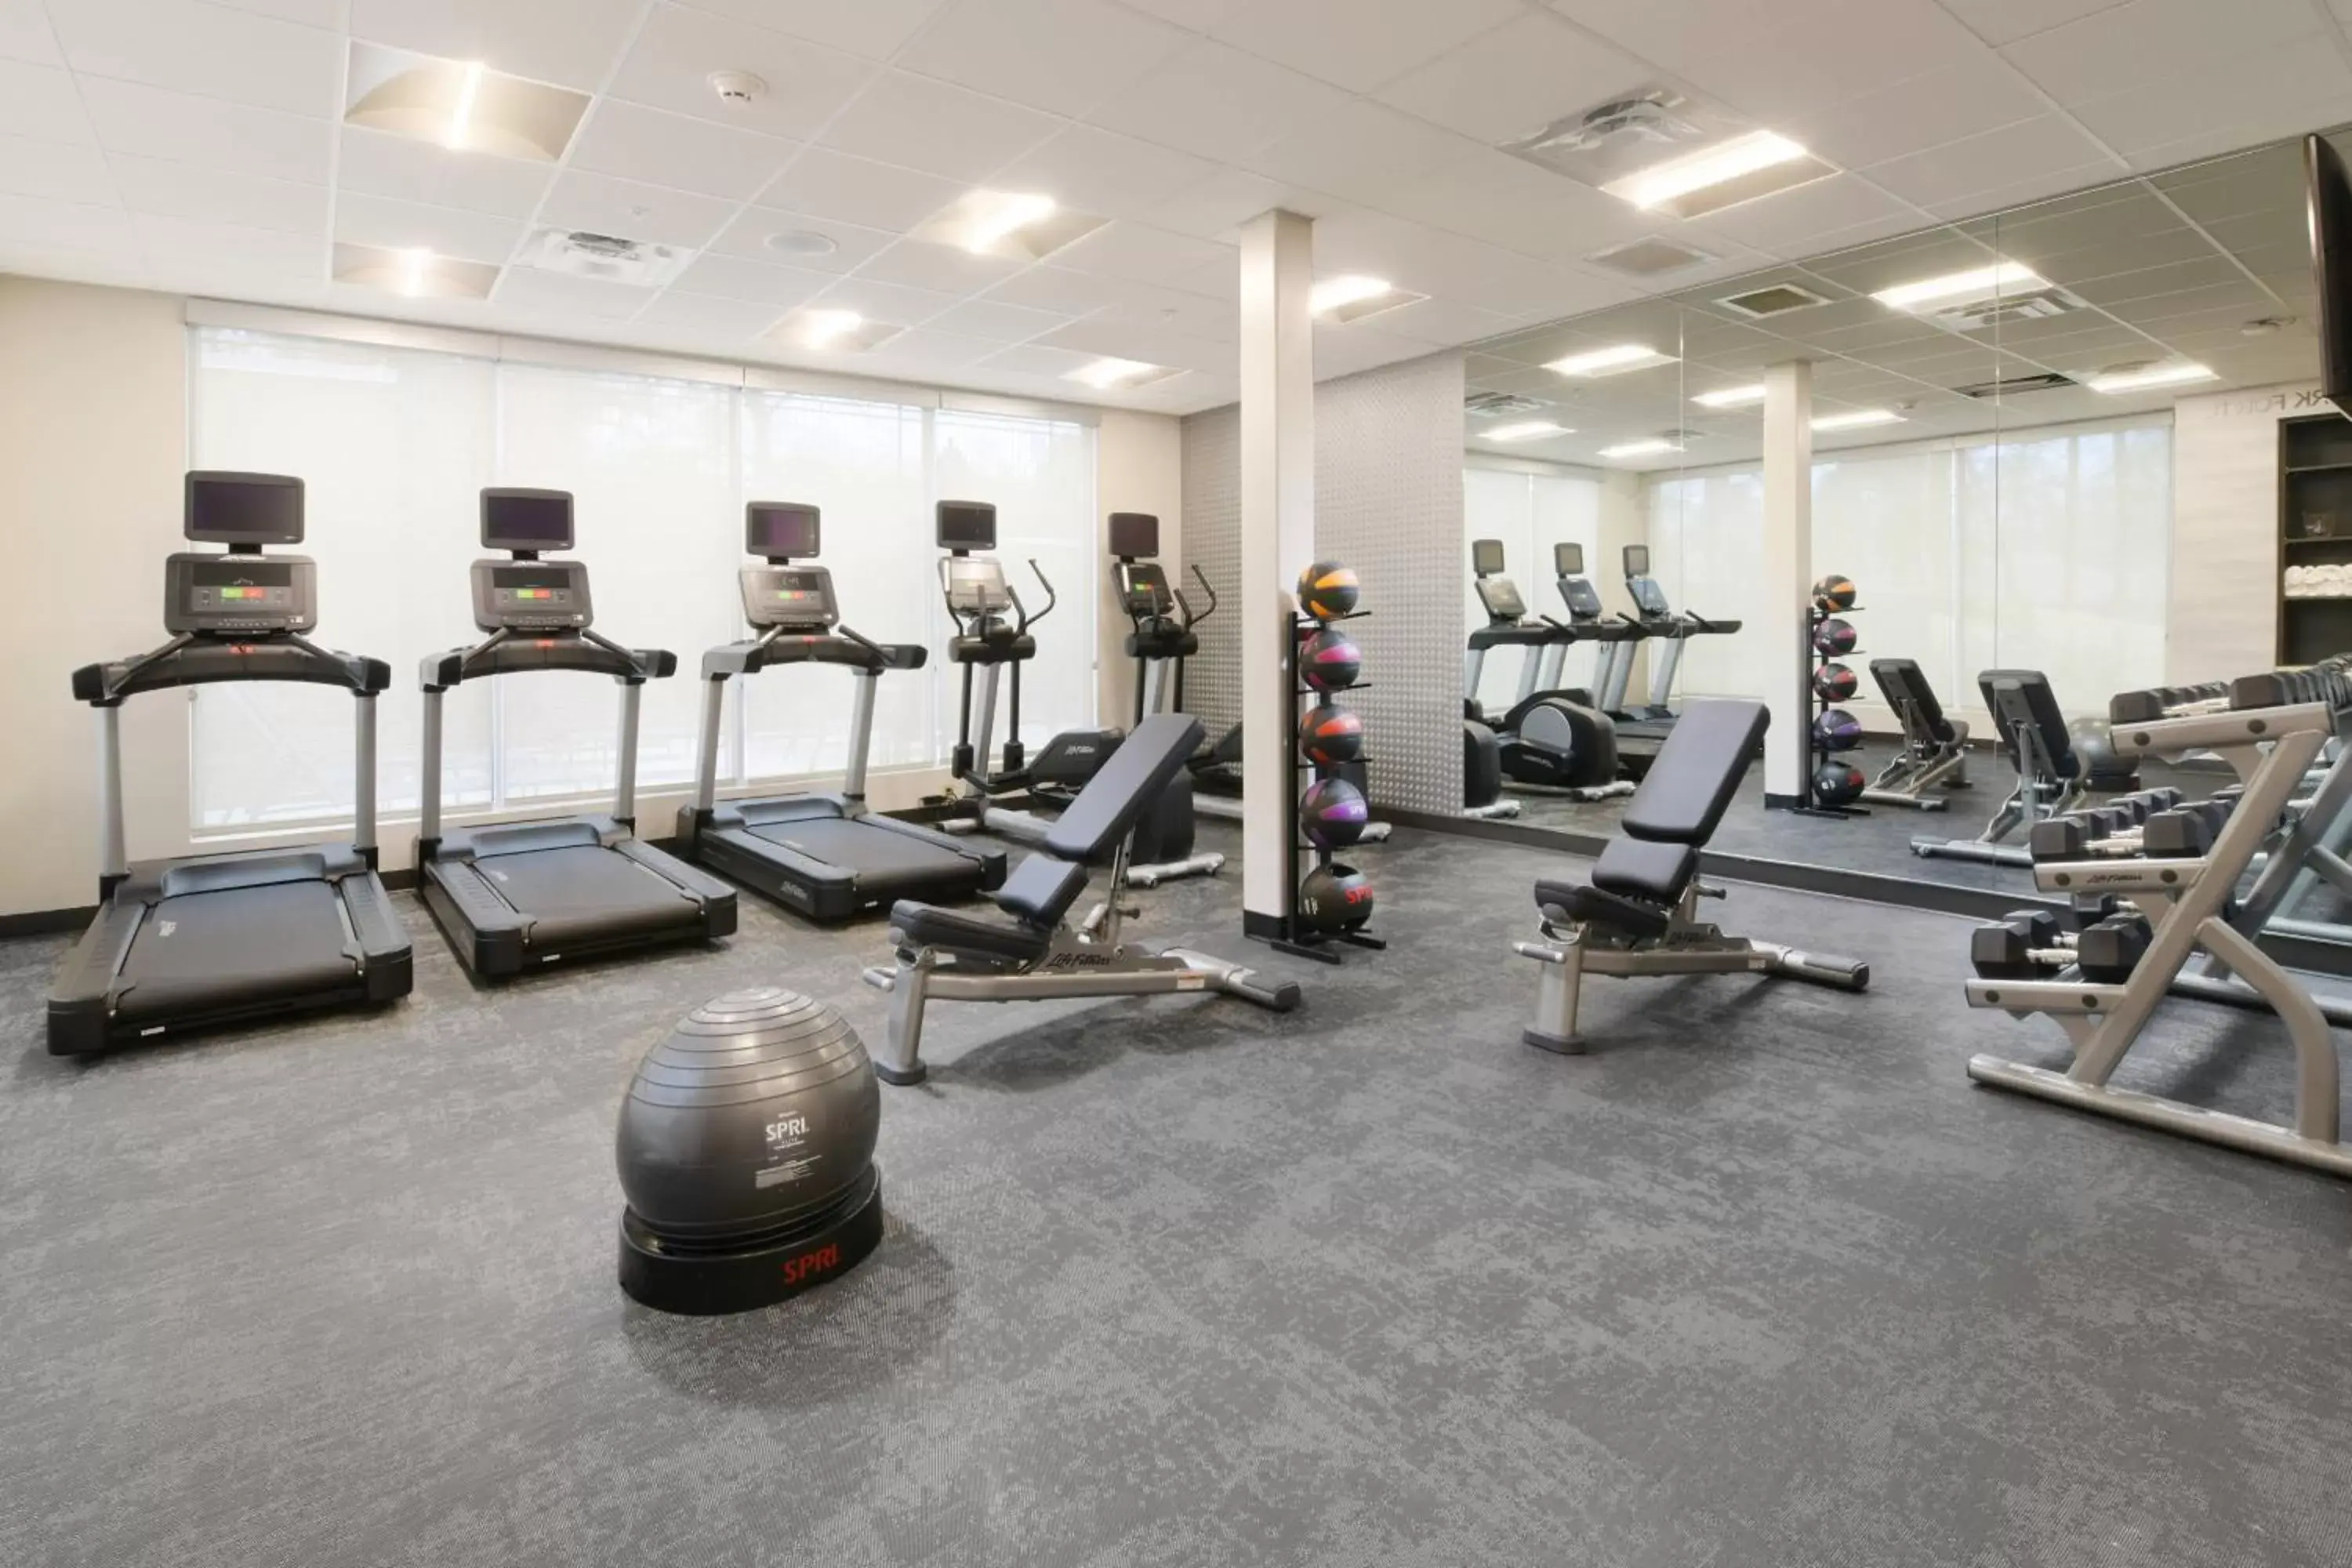 Fitness centre/facilities, Fitness Center/Facilities in Fairfield Inn & Suites by Marriott El Dorado